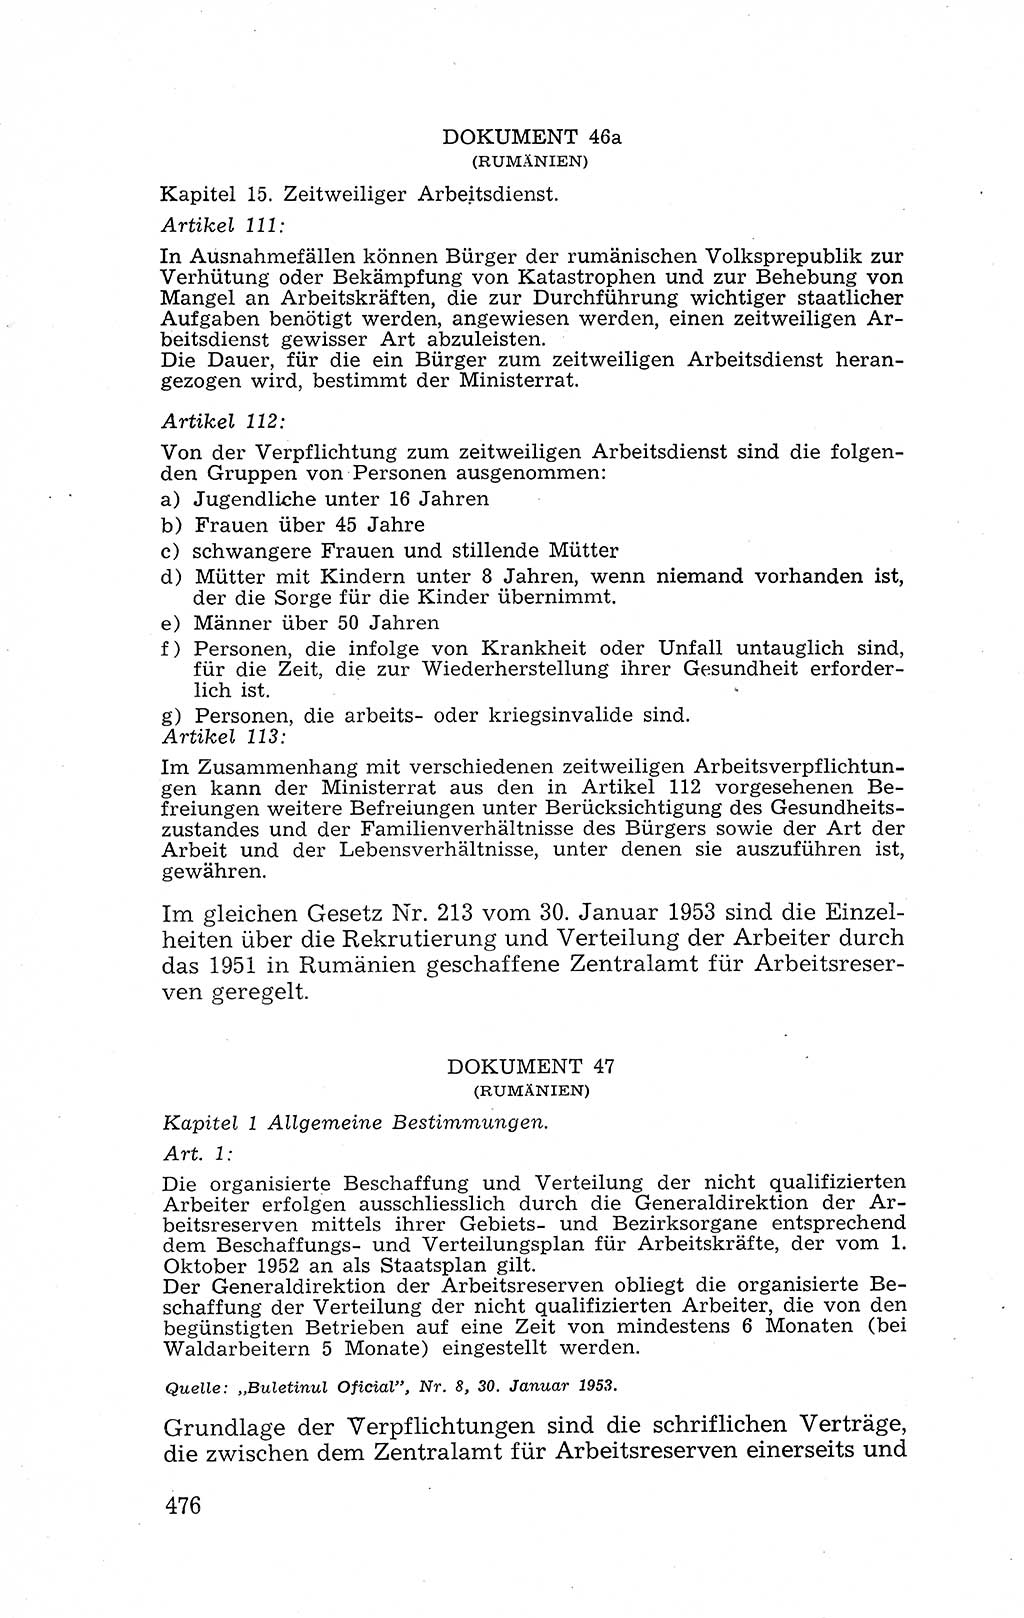 Recht in Fesseln, Dokumente, Internationale Juristen-Kommission [Bundesrepublik Deutschland (BRD)] 1955, Seite 476 (R. Dok. IJK BRD 1955, S. 476)